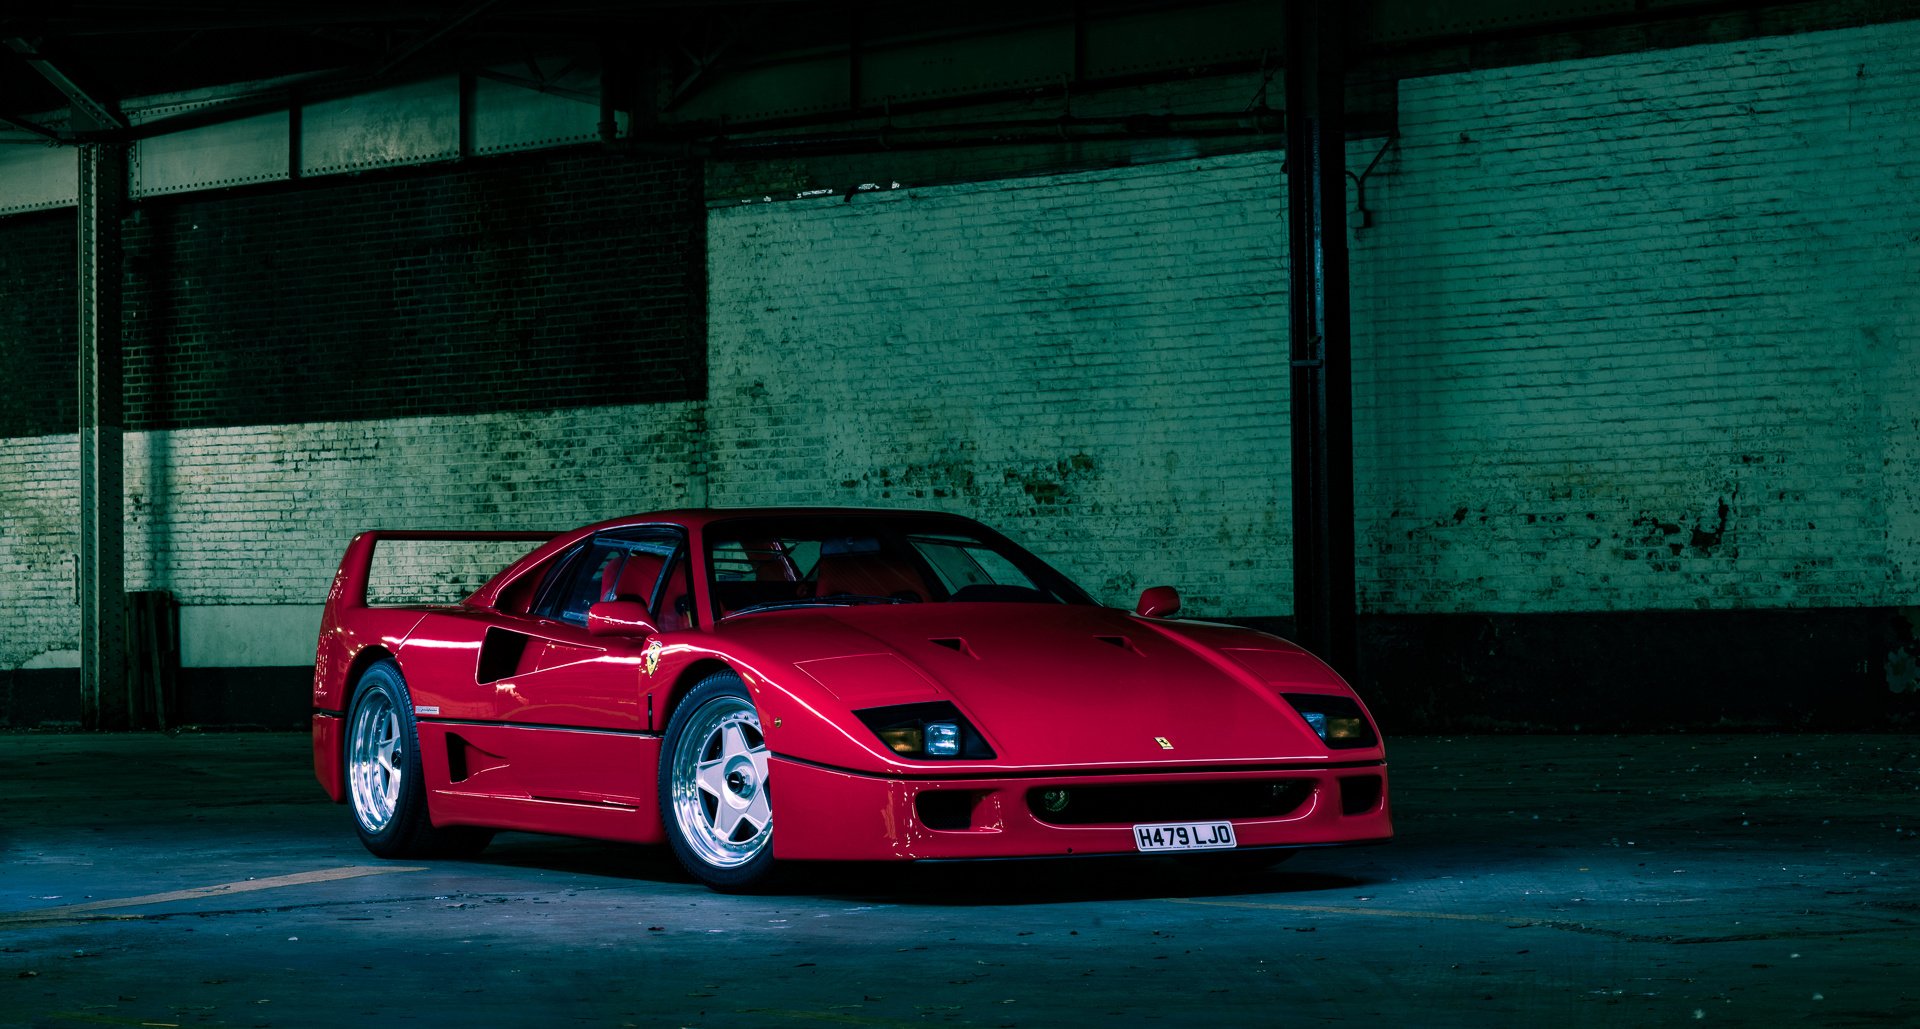 Dieser F40-Prototyp begründete Ferraris Supersportwagen-Ära